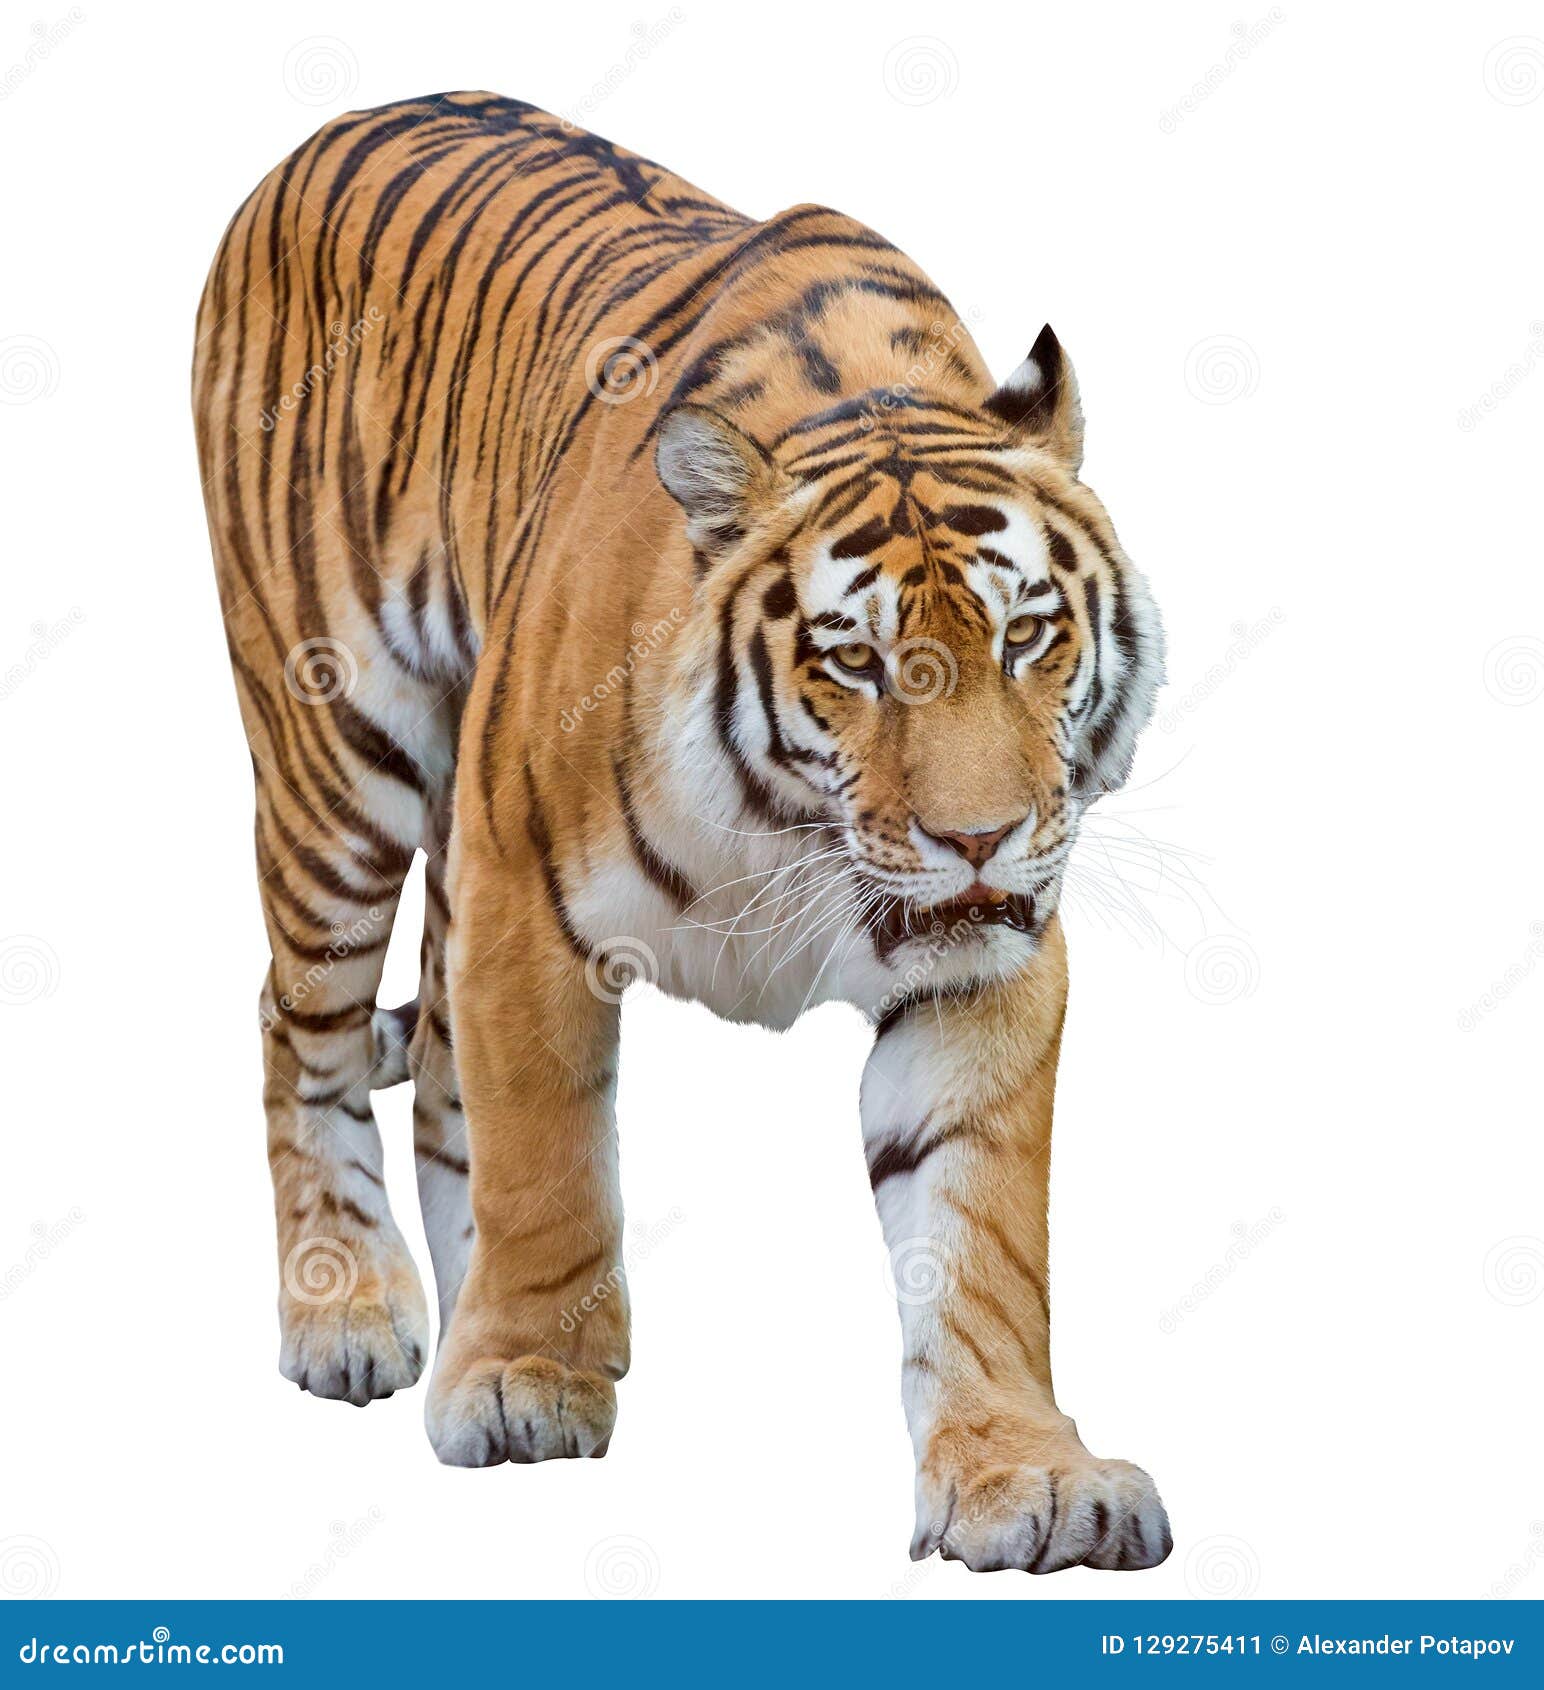 Hãy chiêm ngưỡng vẻ đẹp ma mị và đầy uy lực của hổ trắng đơn trắng khi được cách biệt hoàn toàn với phông nền. Mời bạn xem ảnh rực rỡ này để khám phá thêm về loài hổ huyền thoại.